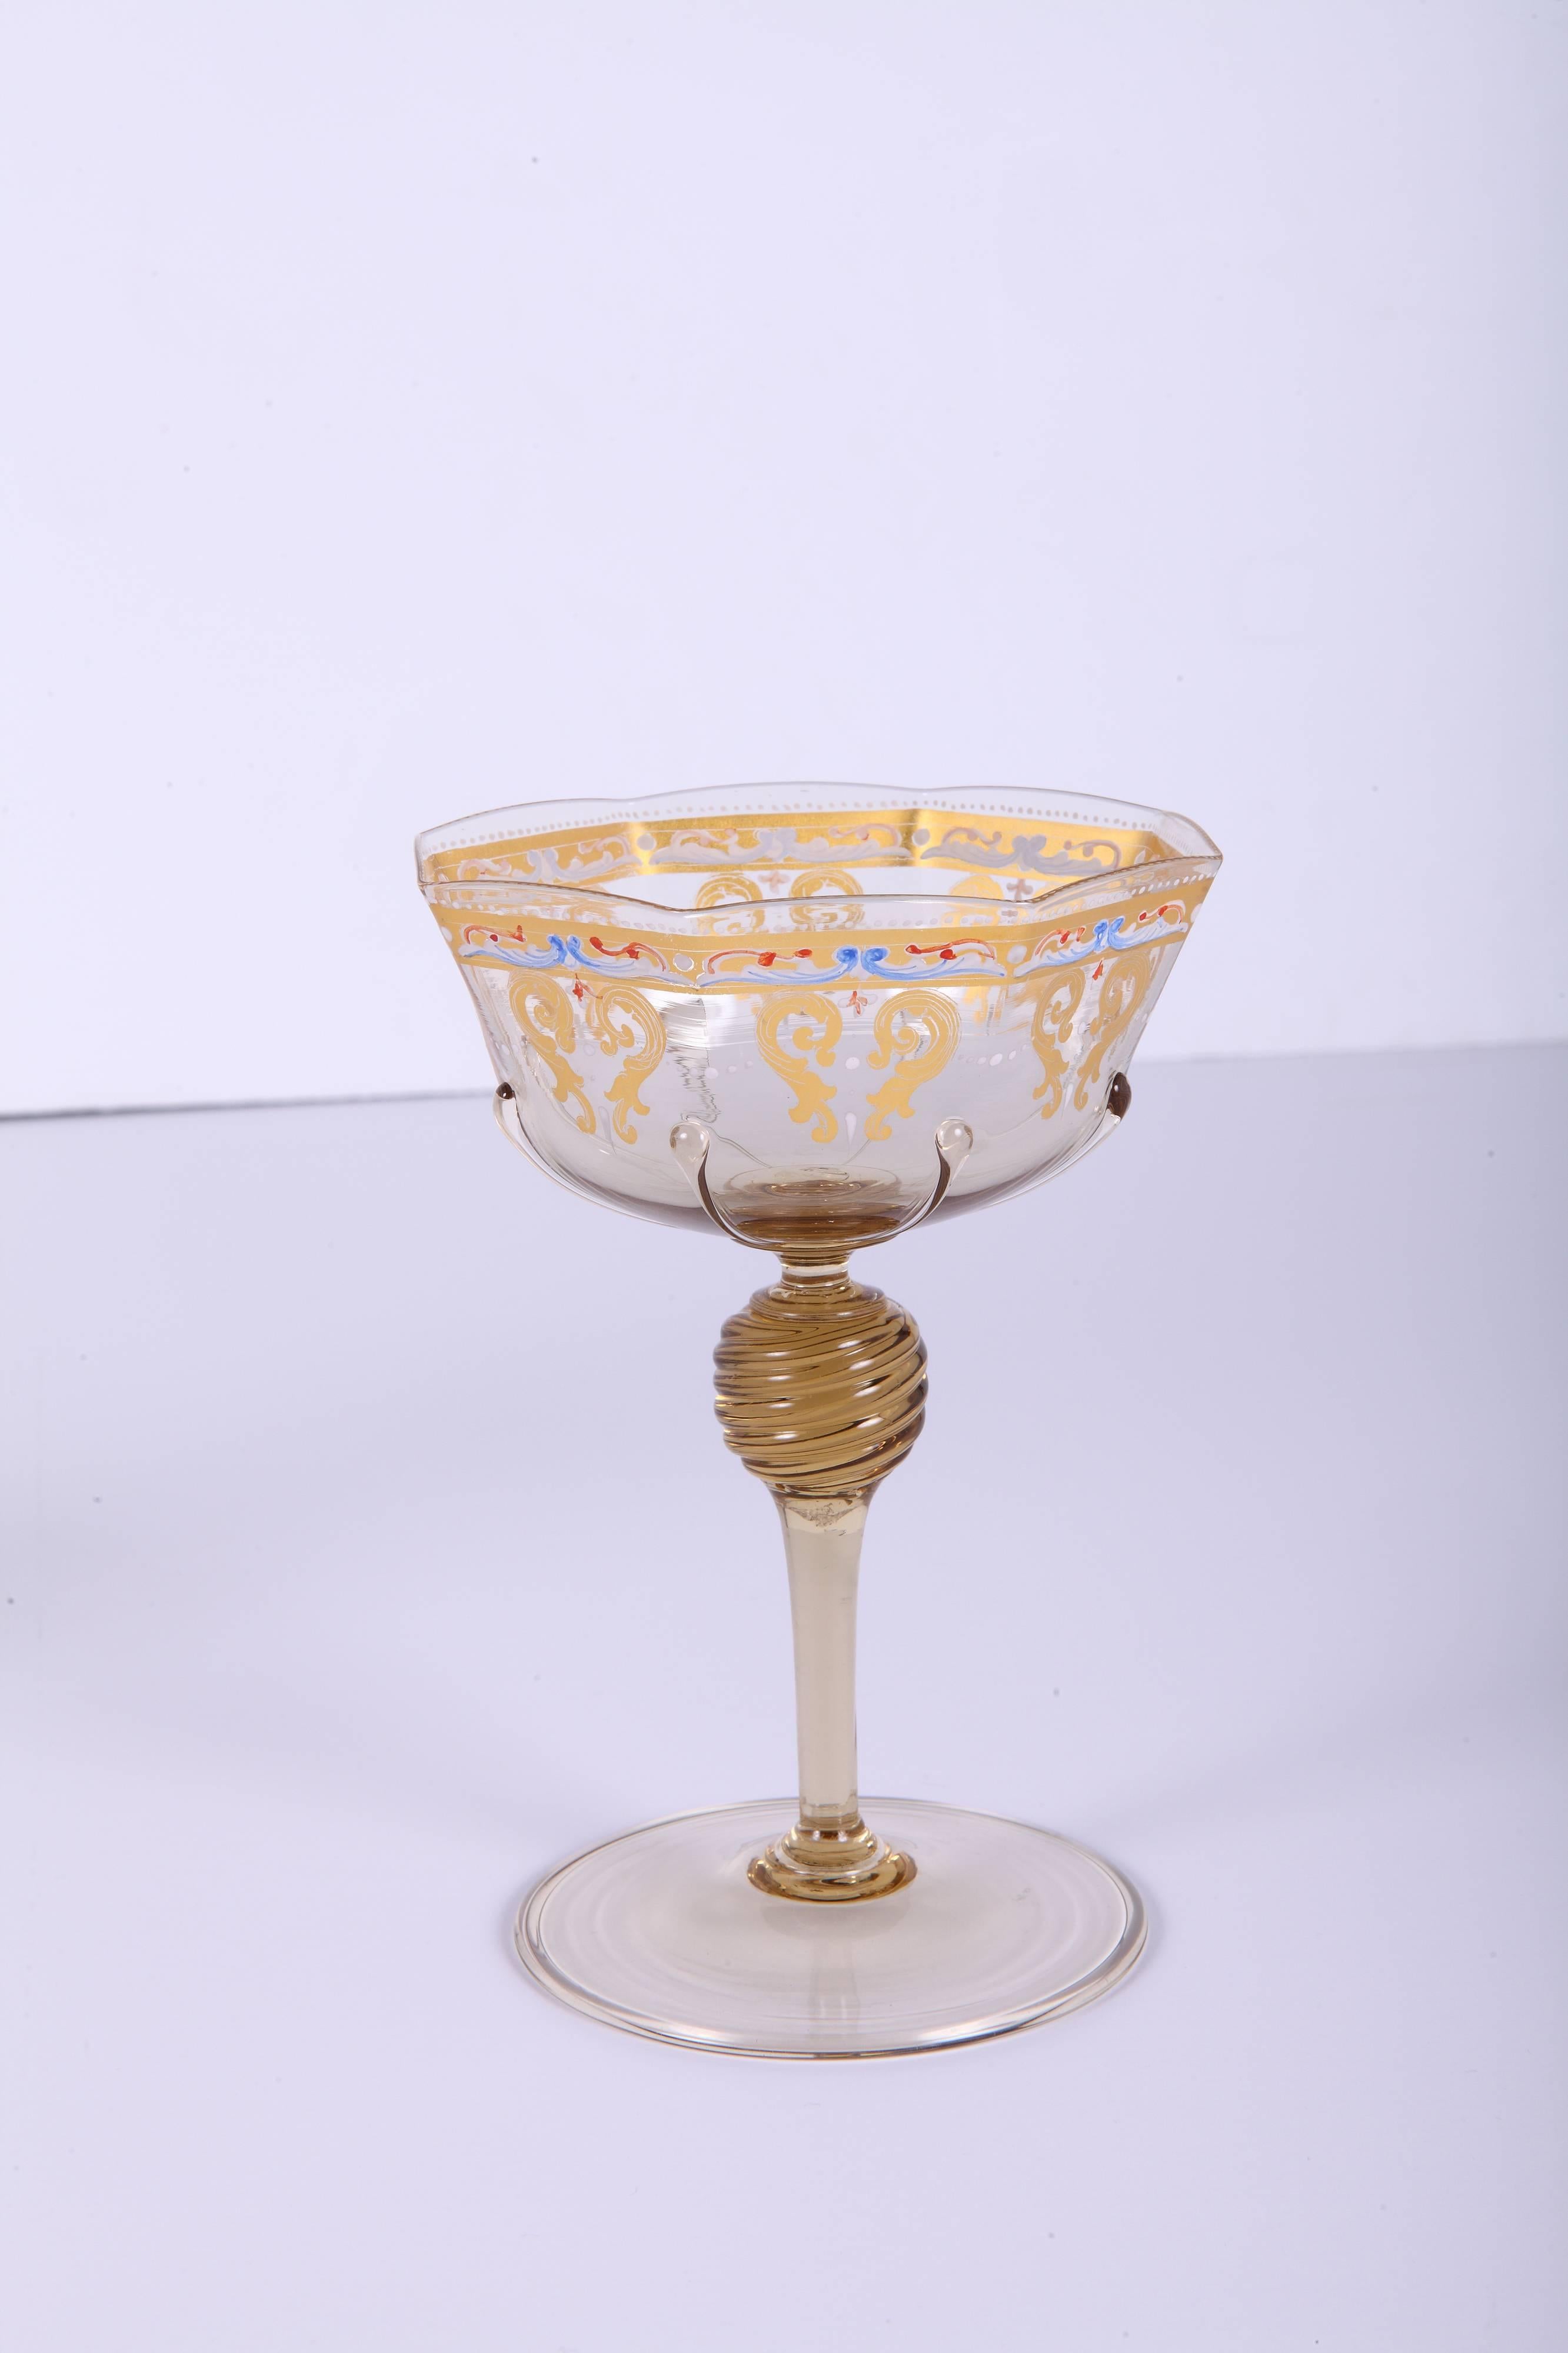 Service de 55 pièces en verre de Murano doré et émaillé de couleur topaze pâle, comprenant (13) verres à vin ou à eau octogonaux, (14) verres à champagne octogonaux, (14) assiettes à dessert rondes et (14) coupes à dessert ou à doigts octogonales.